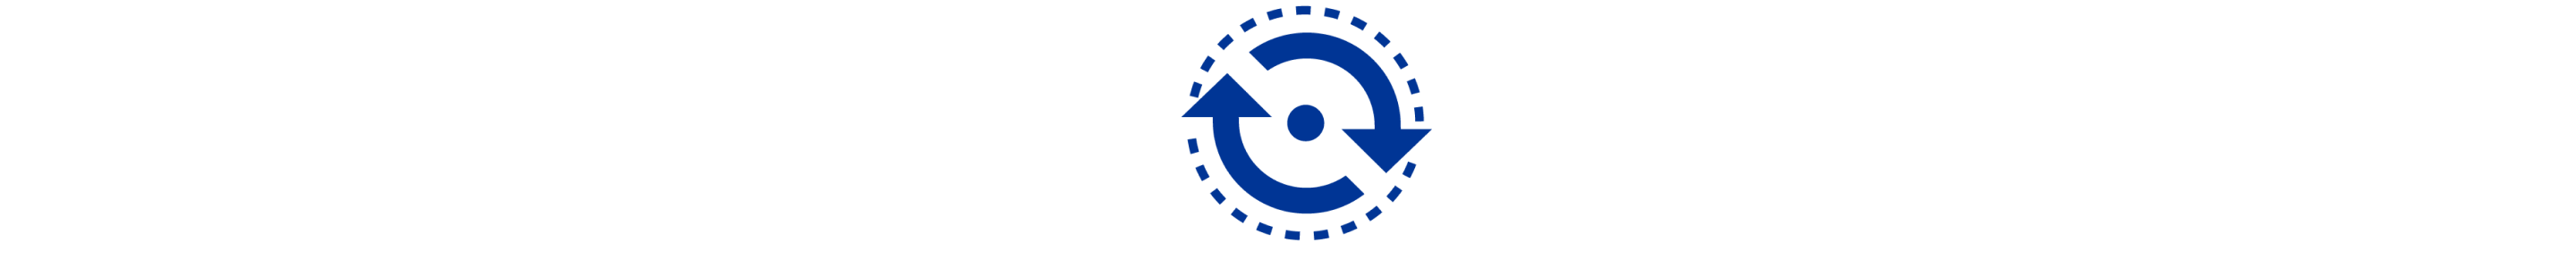 Un ícono azul que muestra líneas dentadas y 2 flechas rodeando un pequeño círculo.